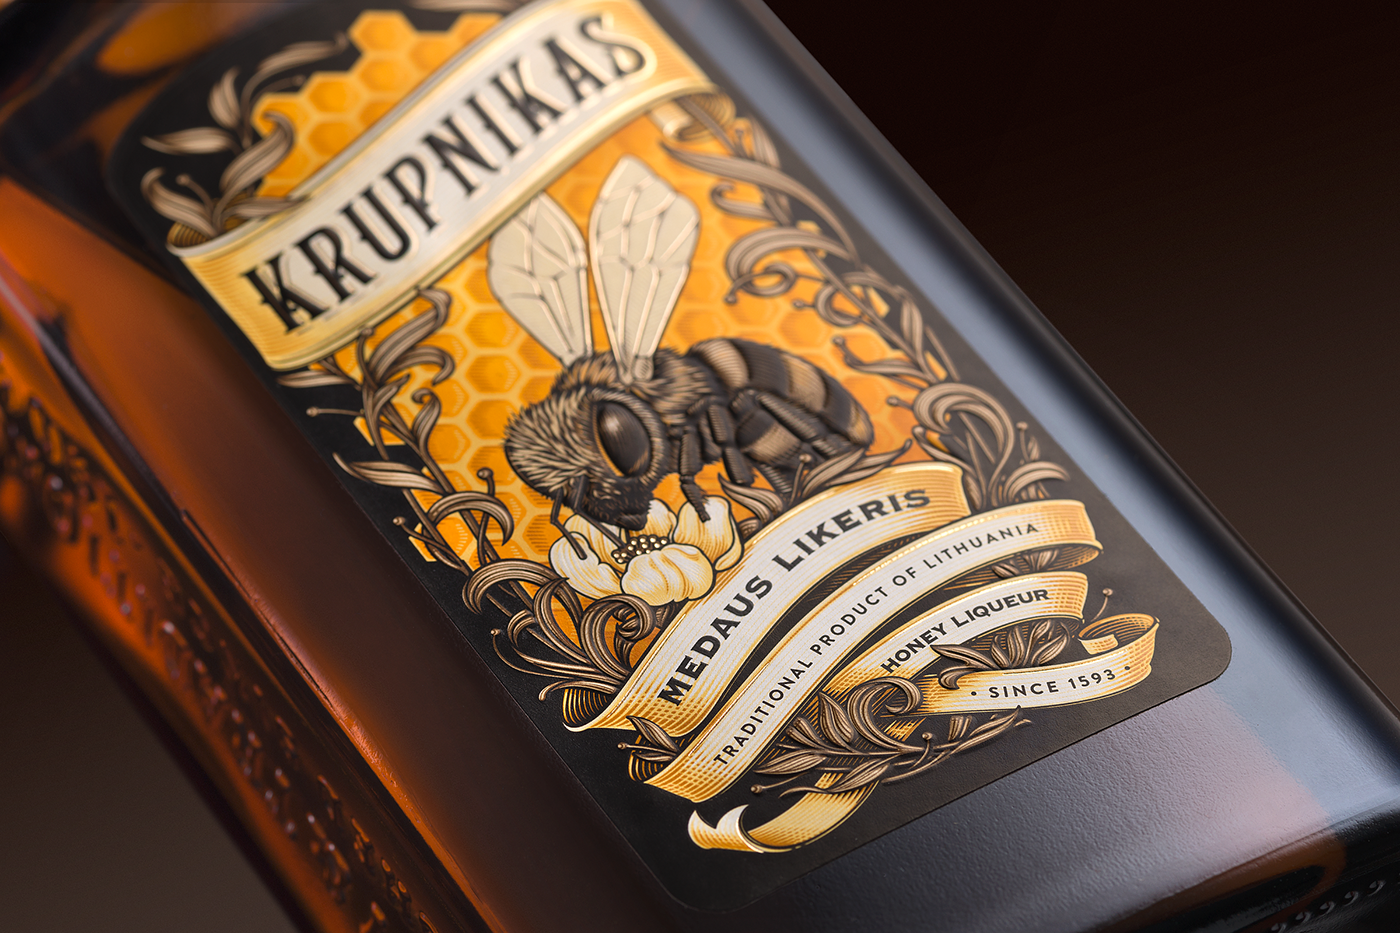 krupnik Label Liqueur etiquette packaging design Stumbras Krupnikas honey liqueur Lithuanian